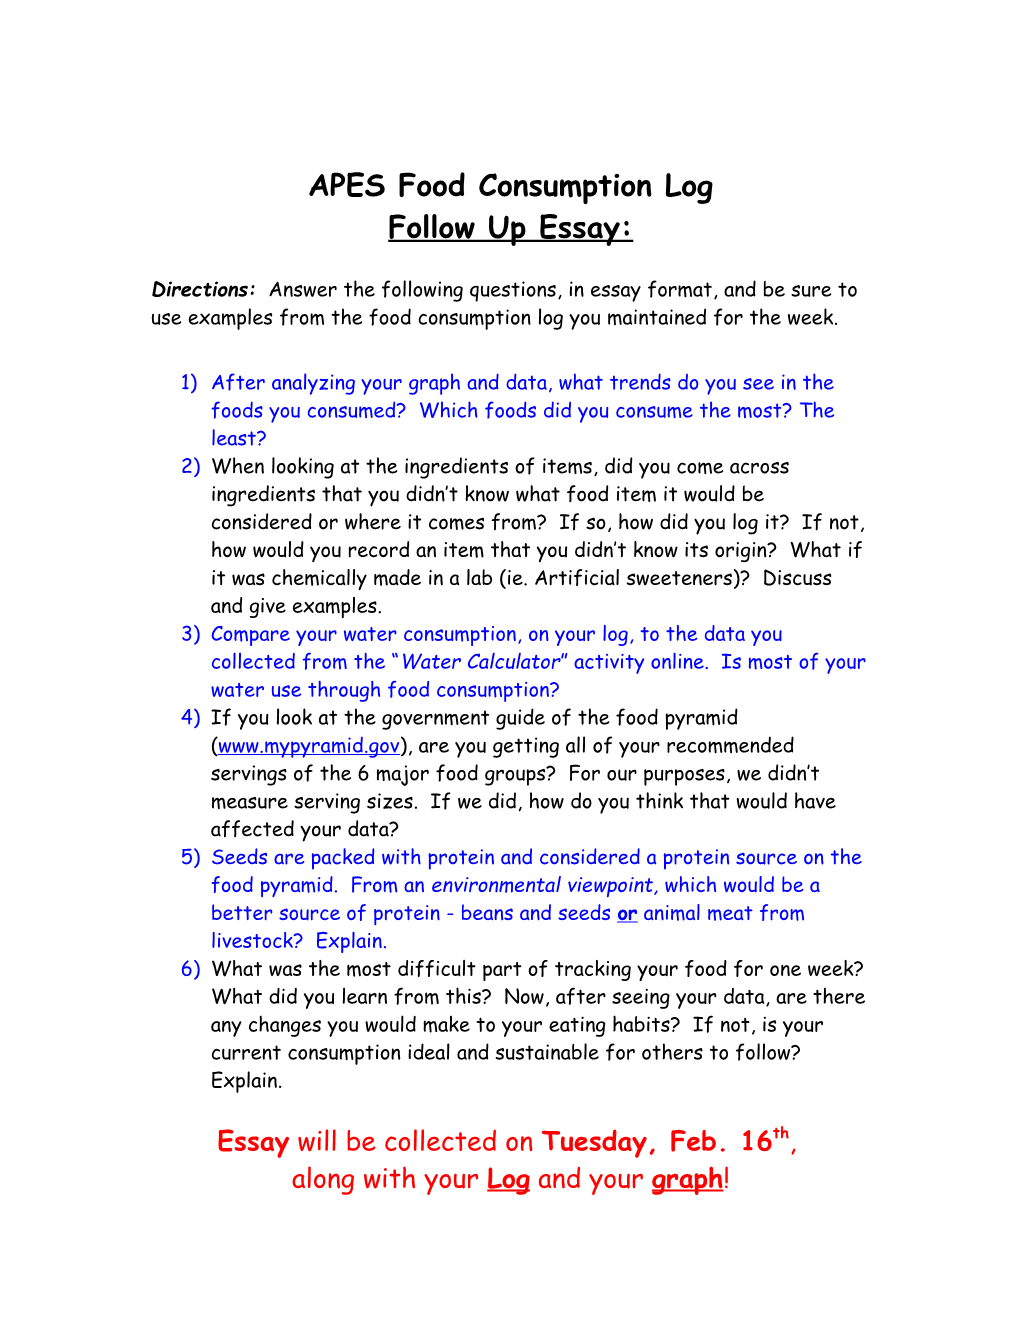 APES Food Consumption Log Follow up Essay